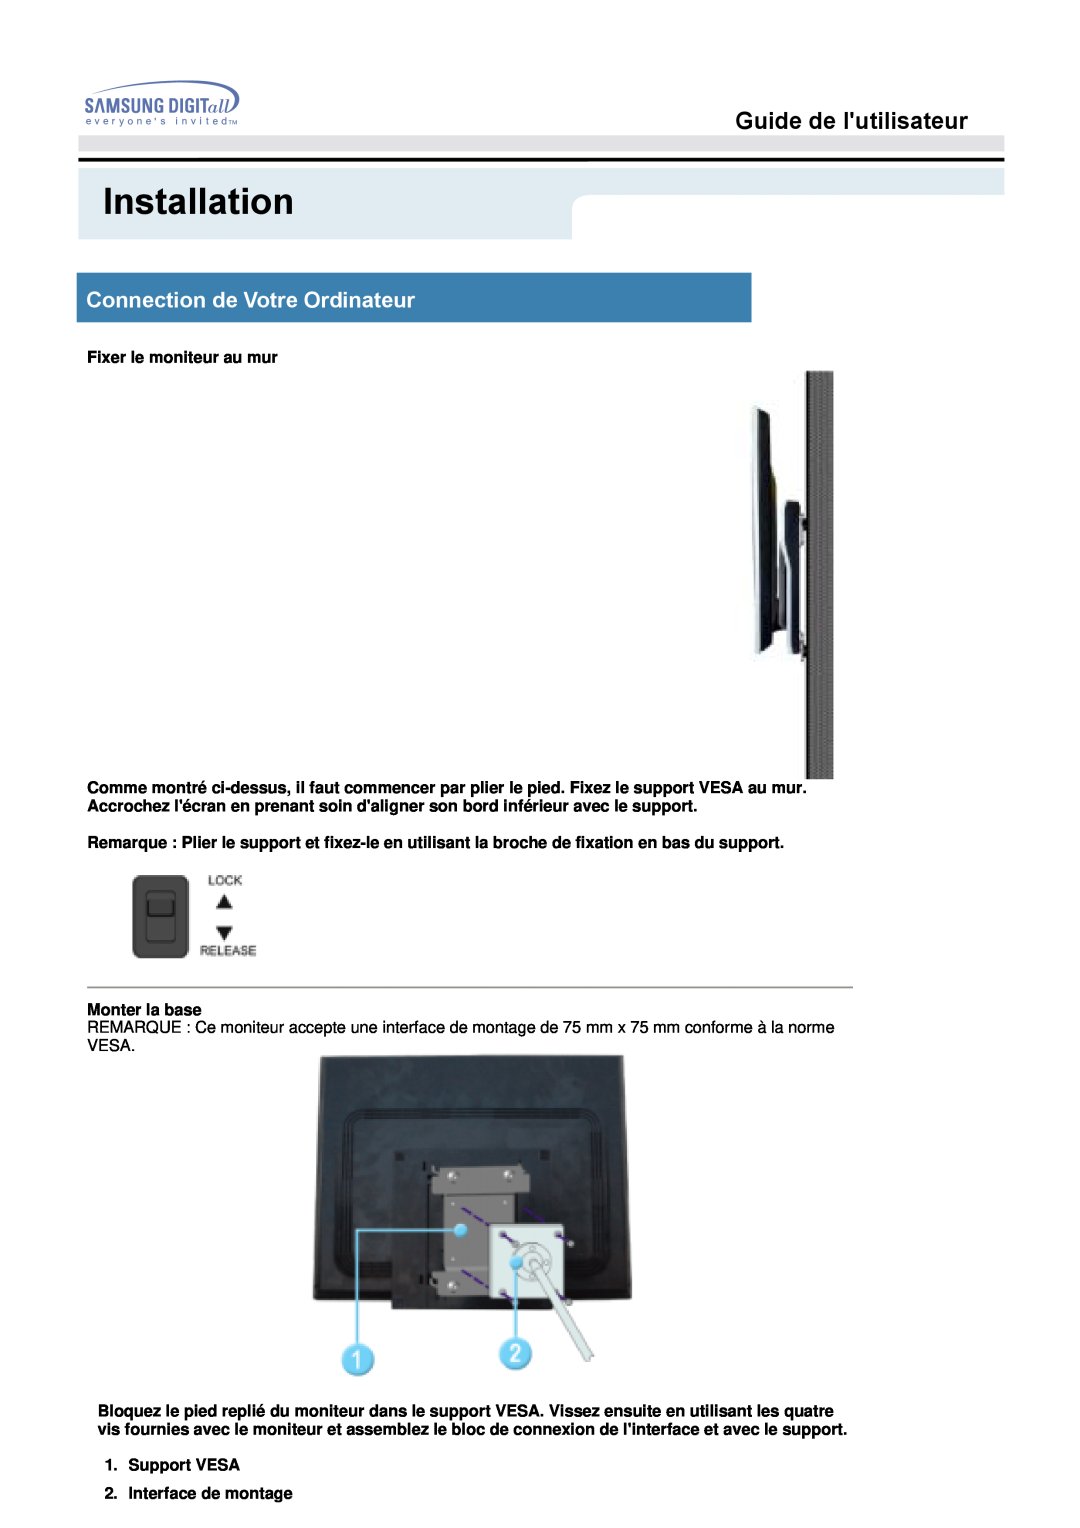 Samsung MO19PSZS/EDC manual Installation, Guide de lutilisateur, Connection de Votre Ordinateur, Fixer le moniteur au mur 